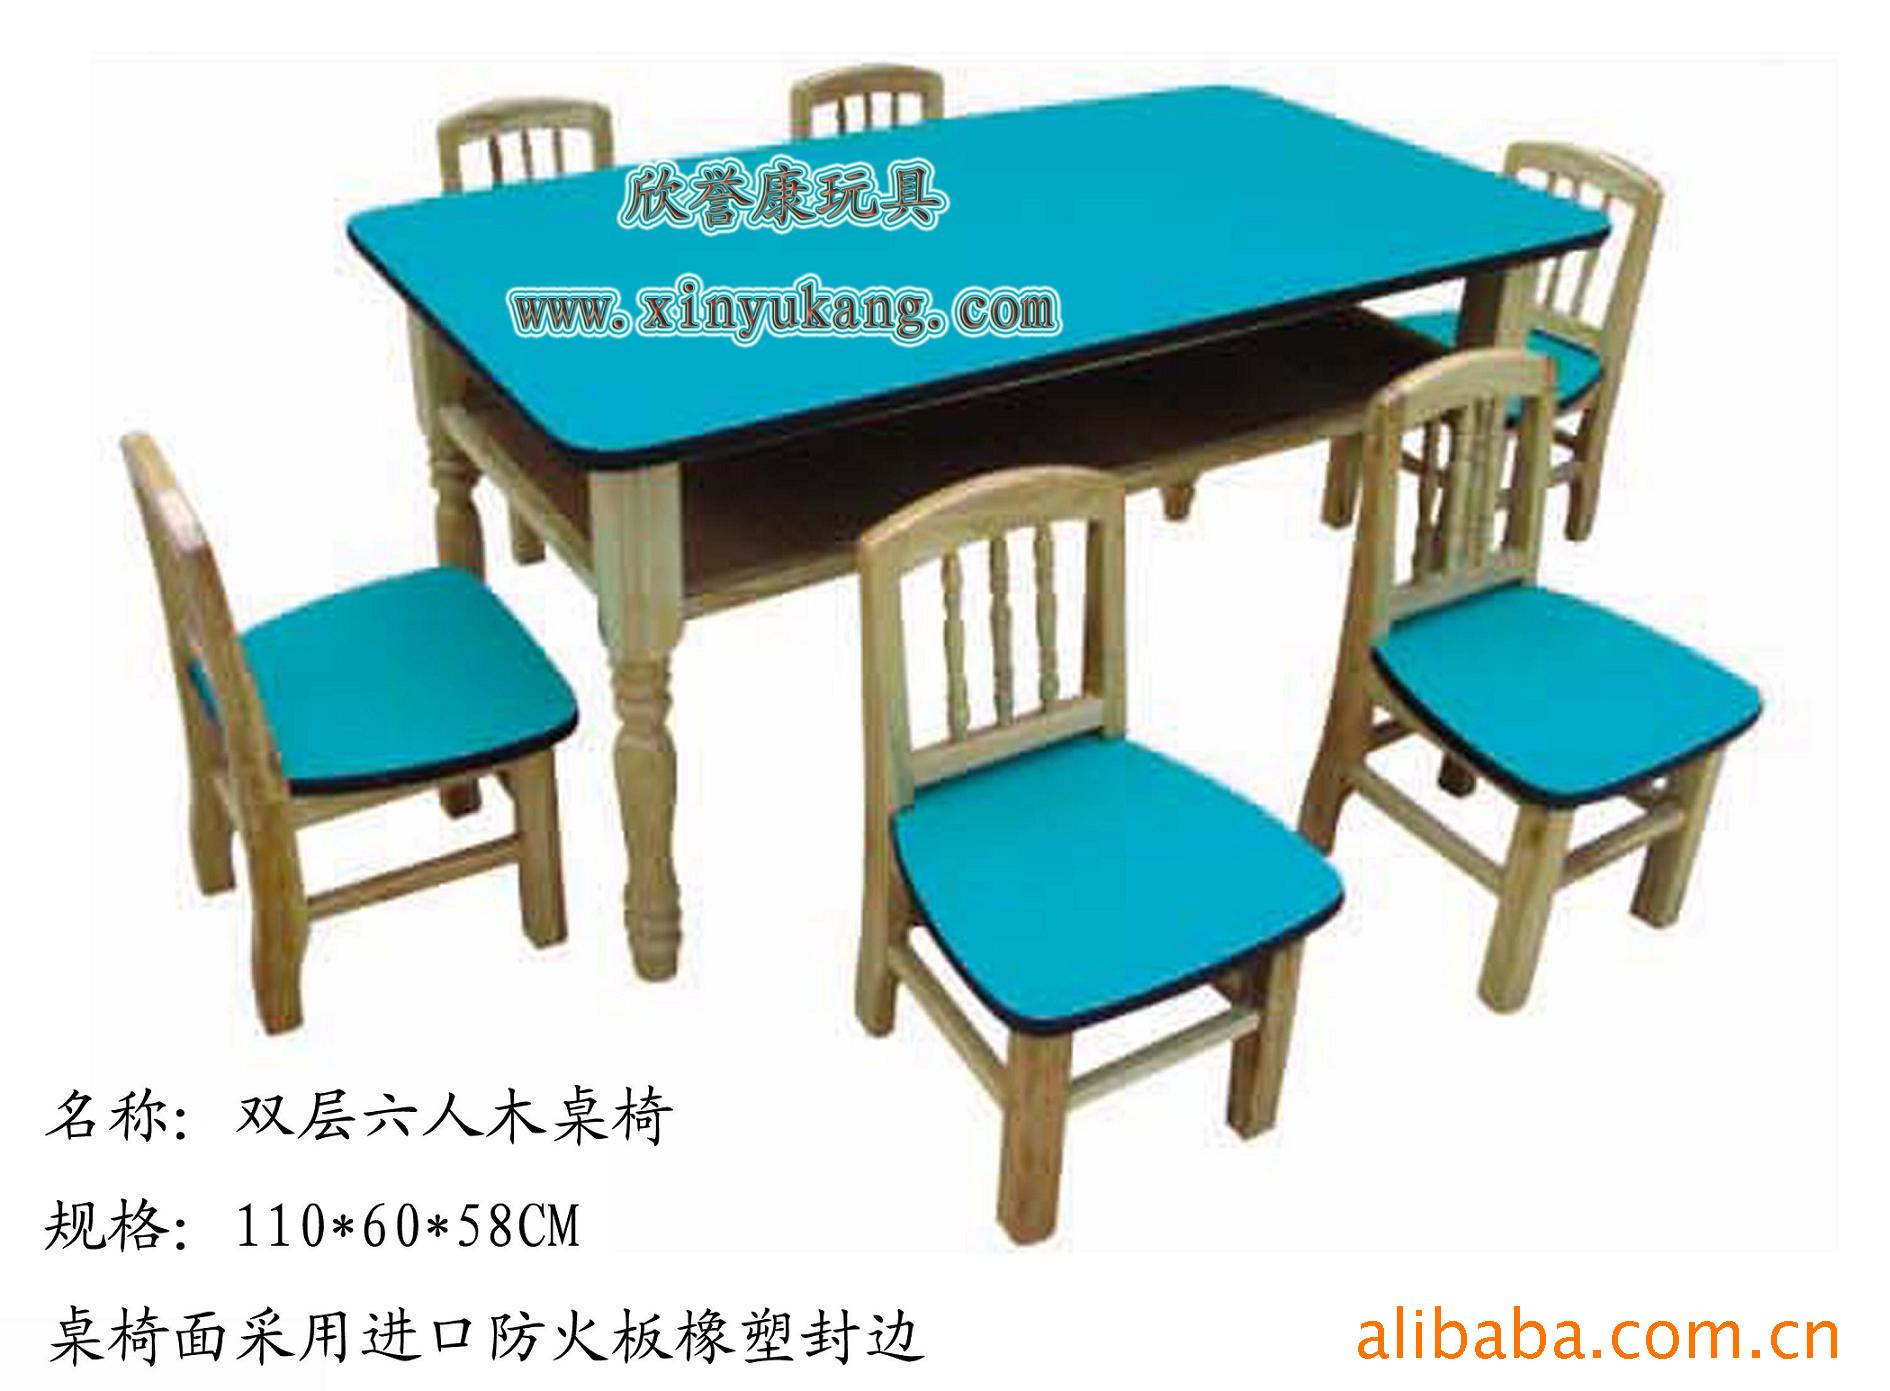 幼儿园桌椅,防火型学习桌,双层豪华桌,课堂桌椅信息